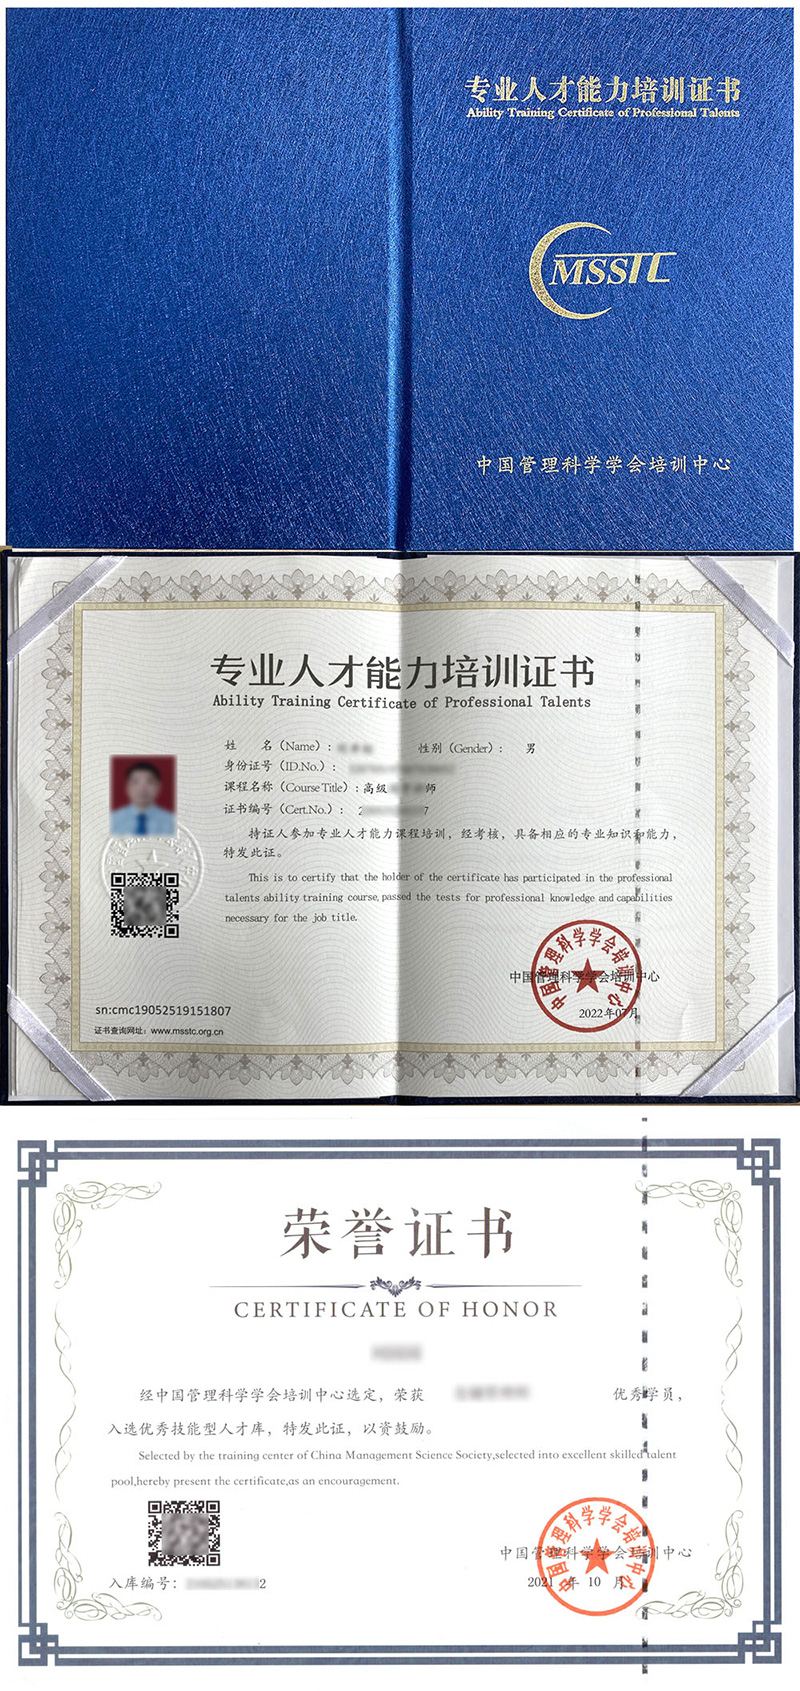 中国管理科学学会培训中心 专业人才能力培训证书 汽车连锁服务店长证证书样本